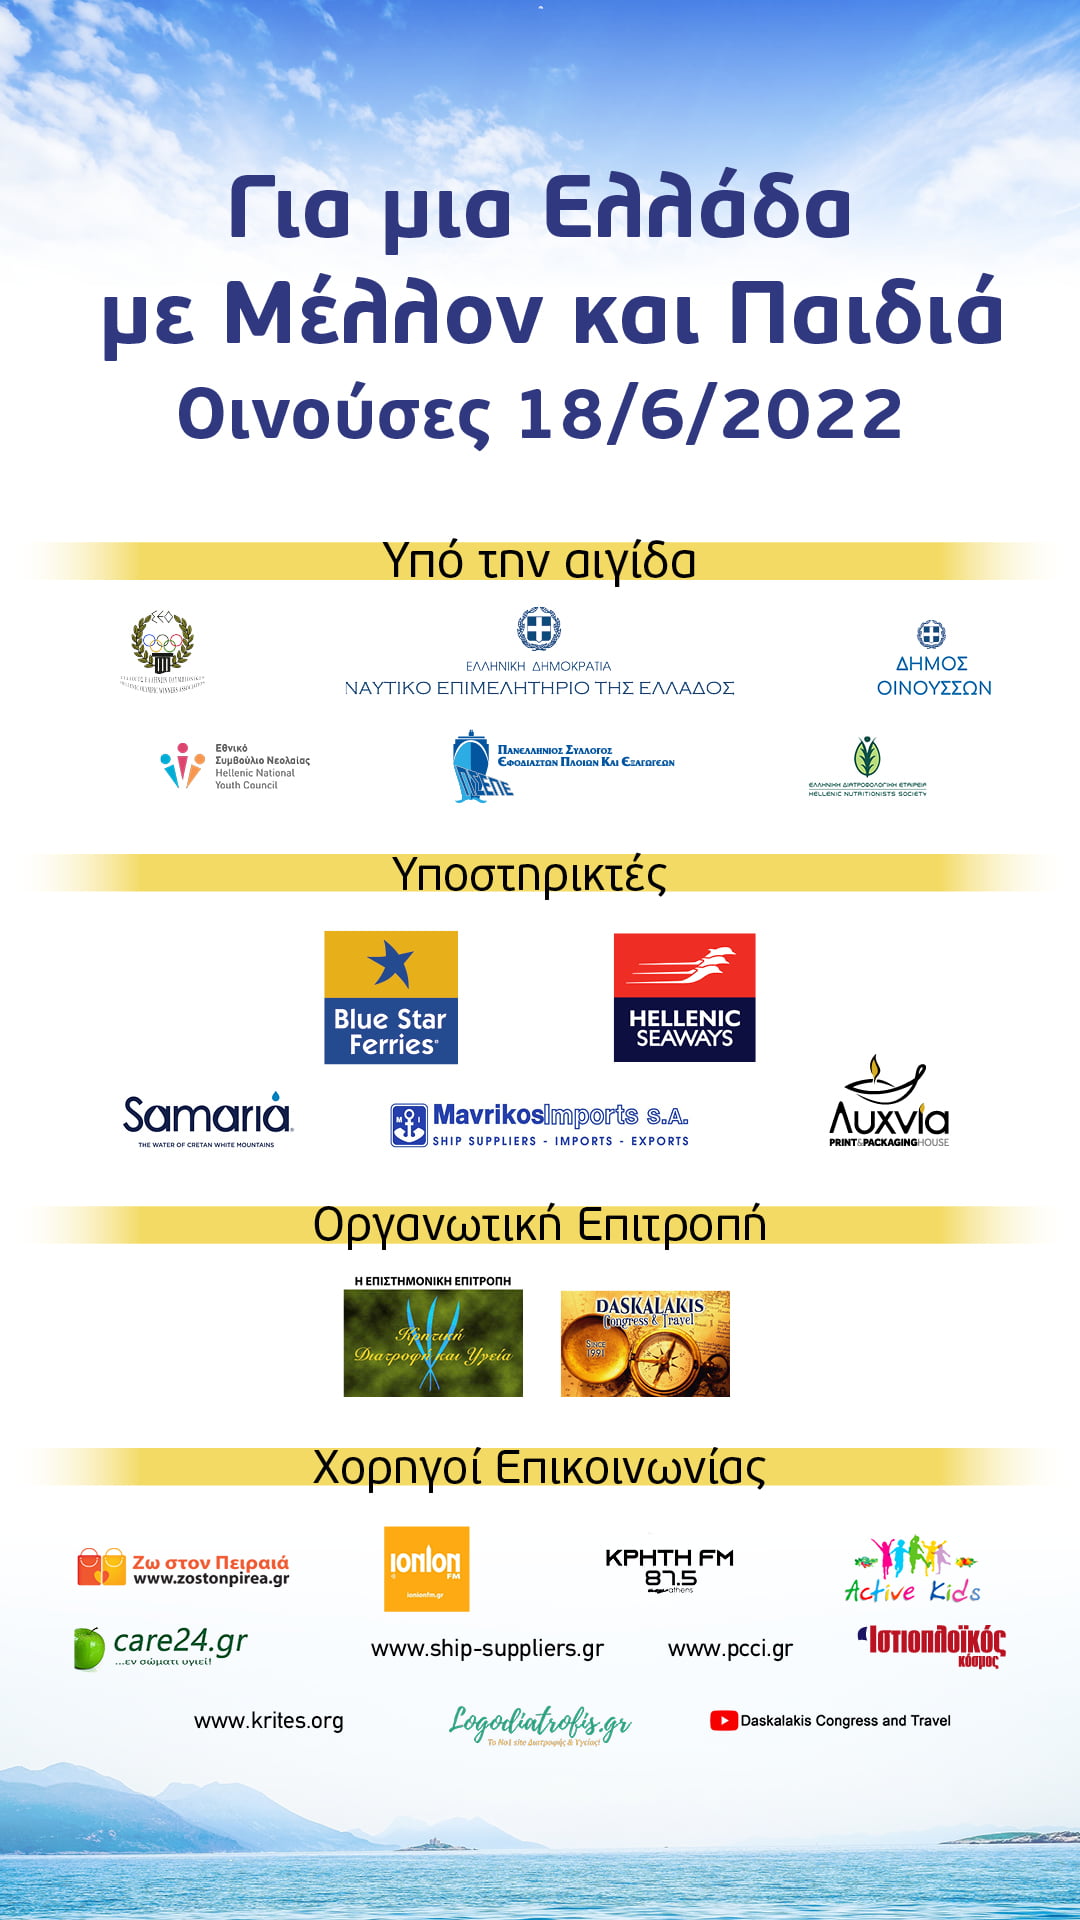 Εκδήλωση με θέμα "Για μια Ελλάδα με μέλλον και παιδιά" - Για μια Ελλάδα με μέλλον και παιδιά